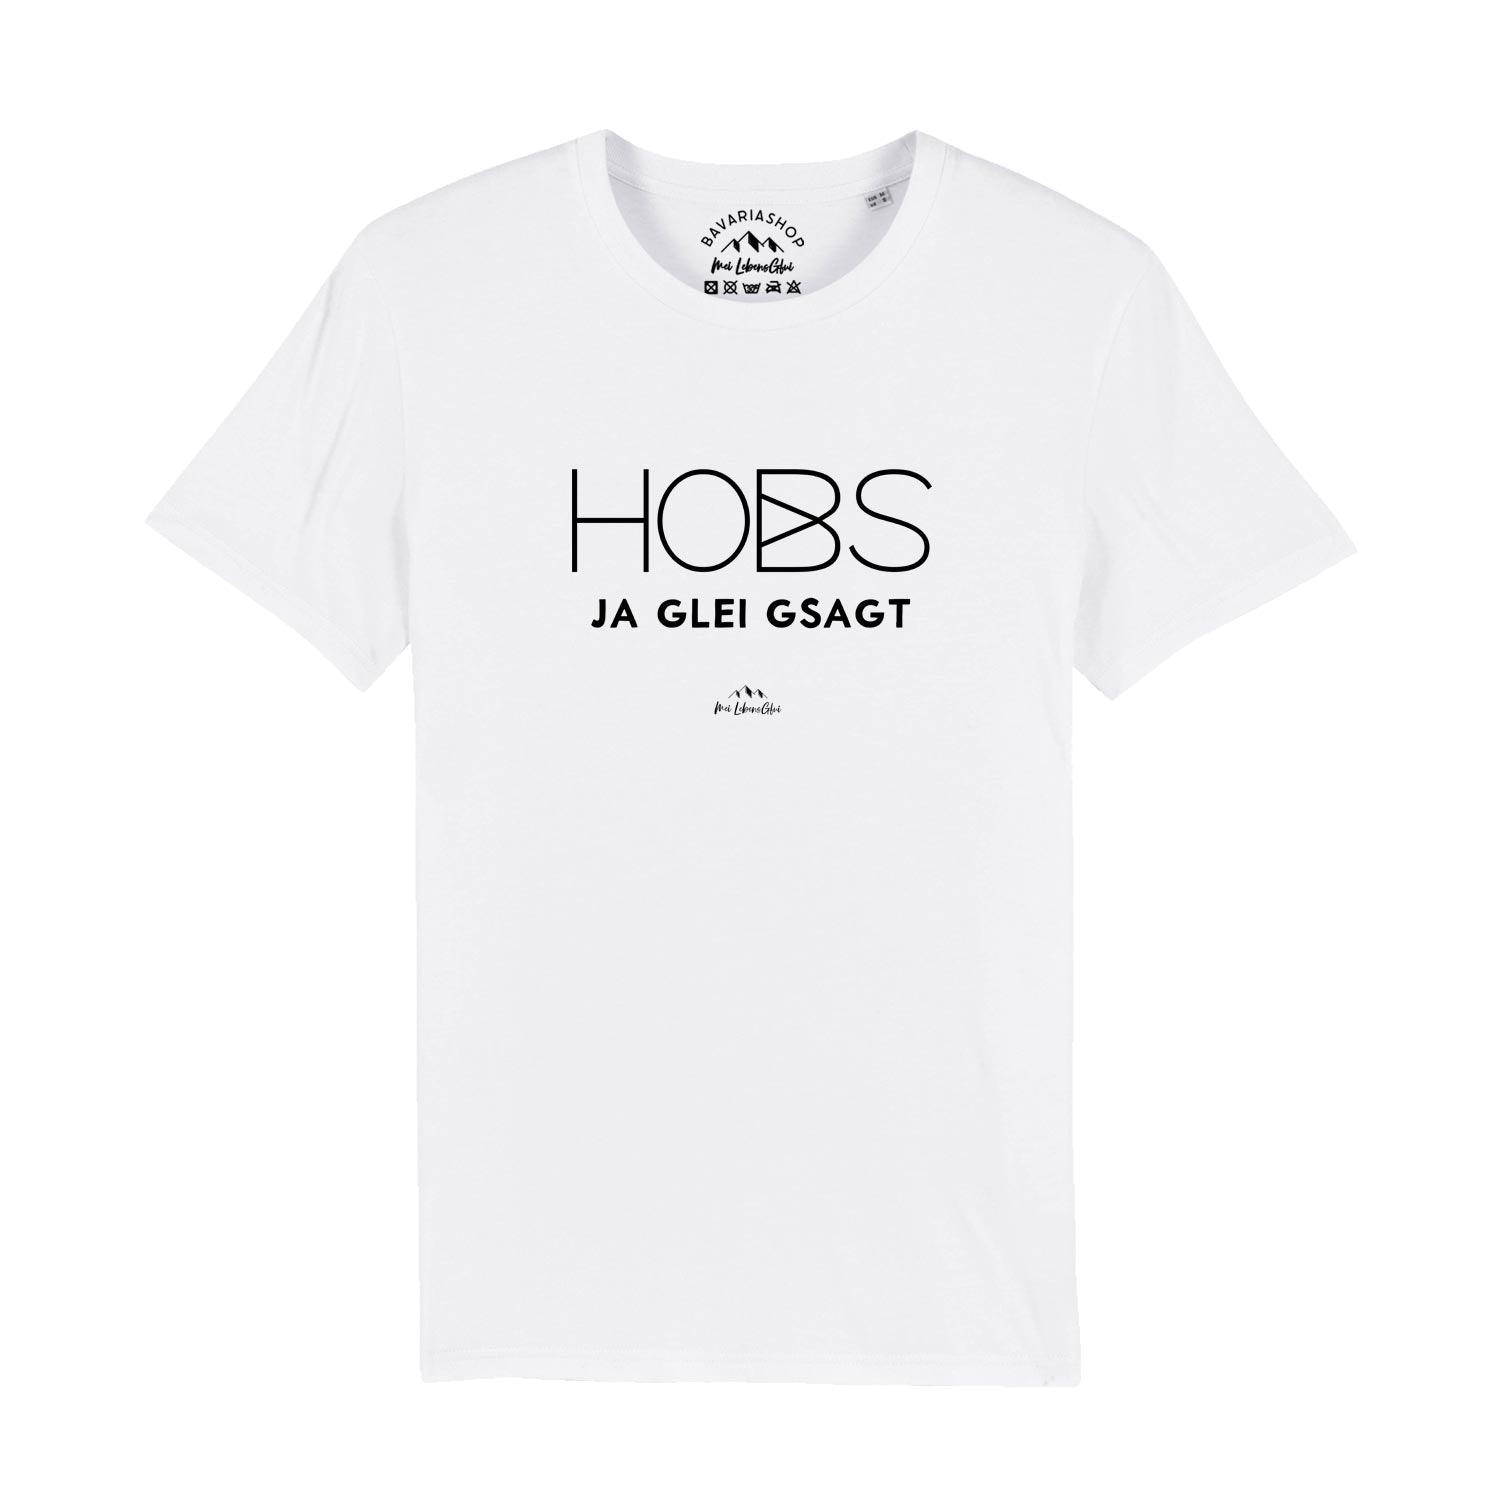 Herren T-Shirt "Hobs ja glei gsagt" - bavariashop - mei LebensGfui